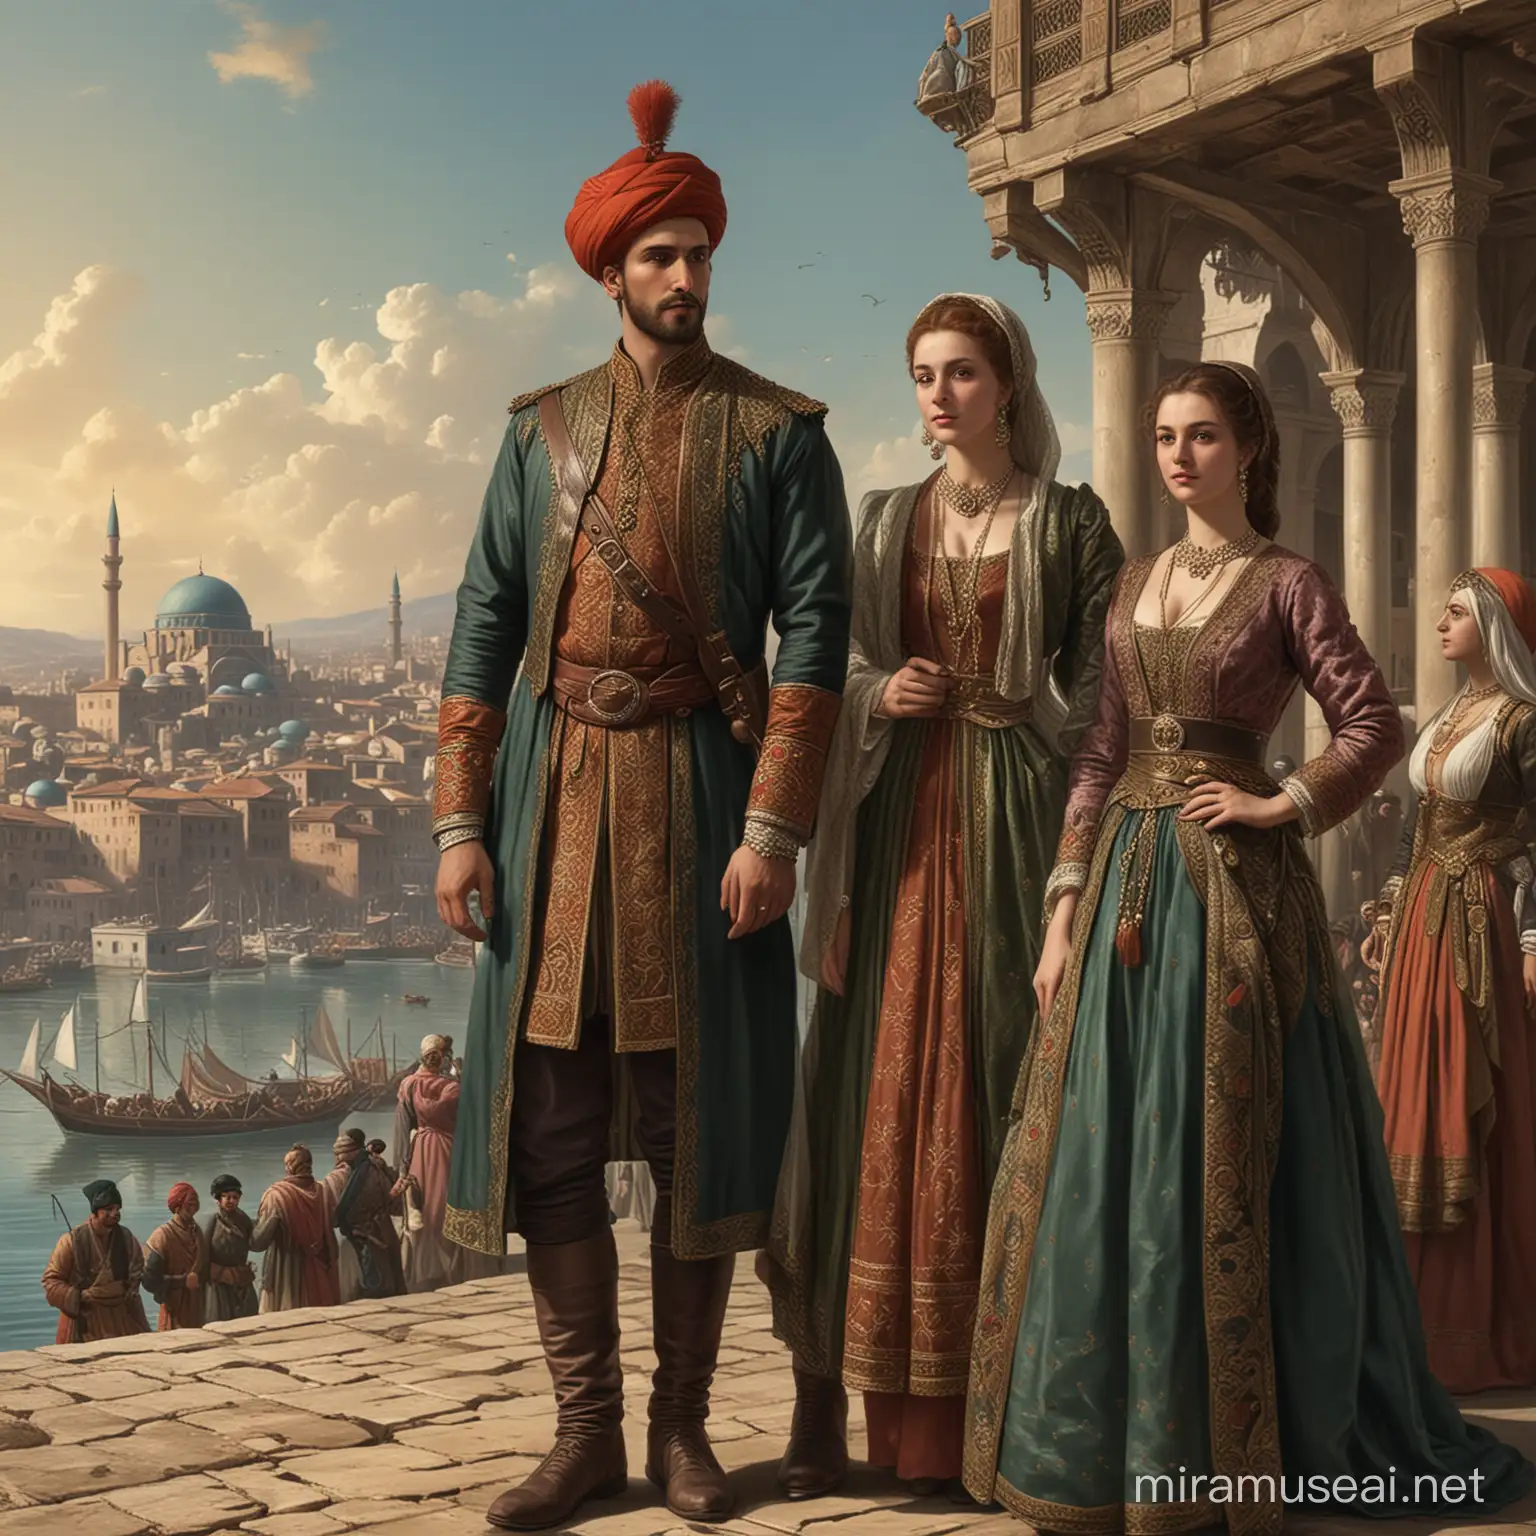 17th Century Ottoman Empire Fashion in City Setting